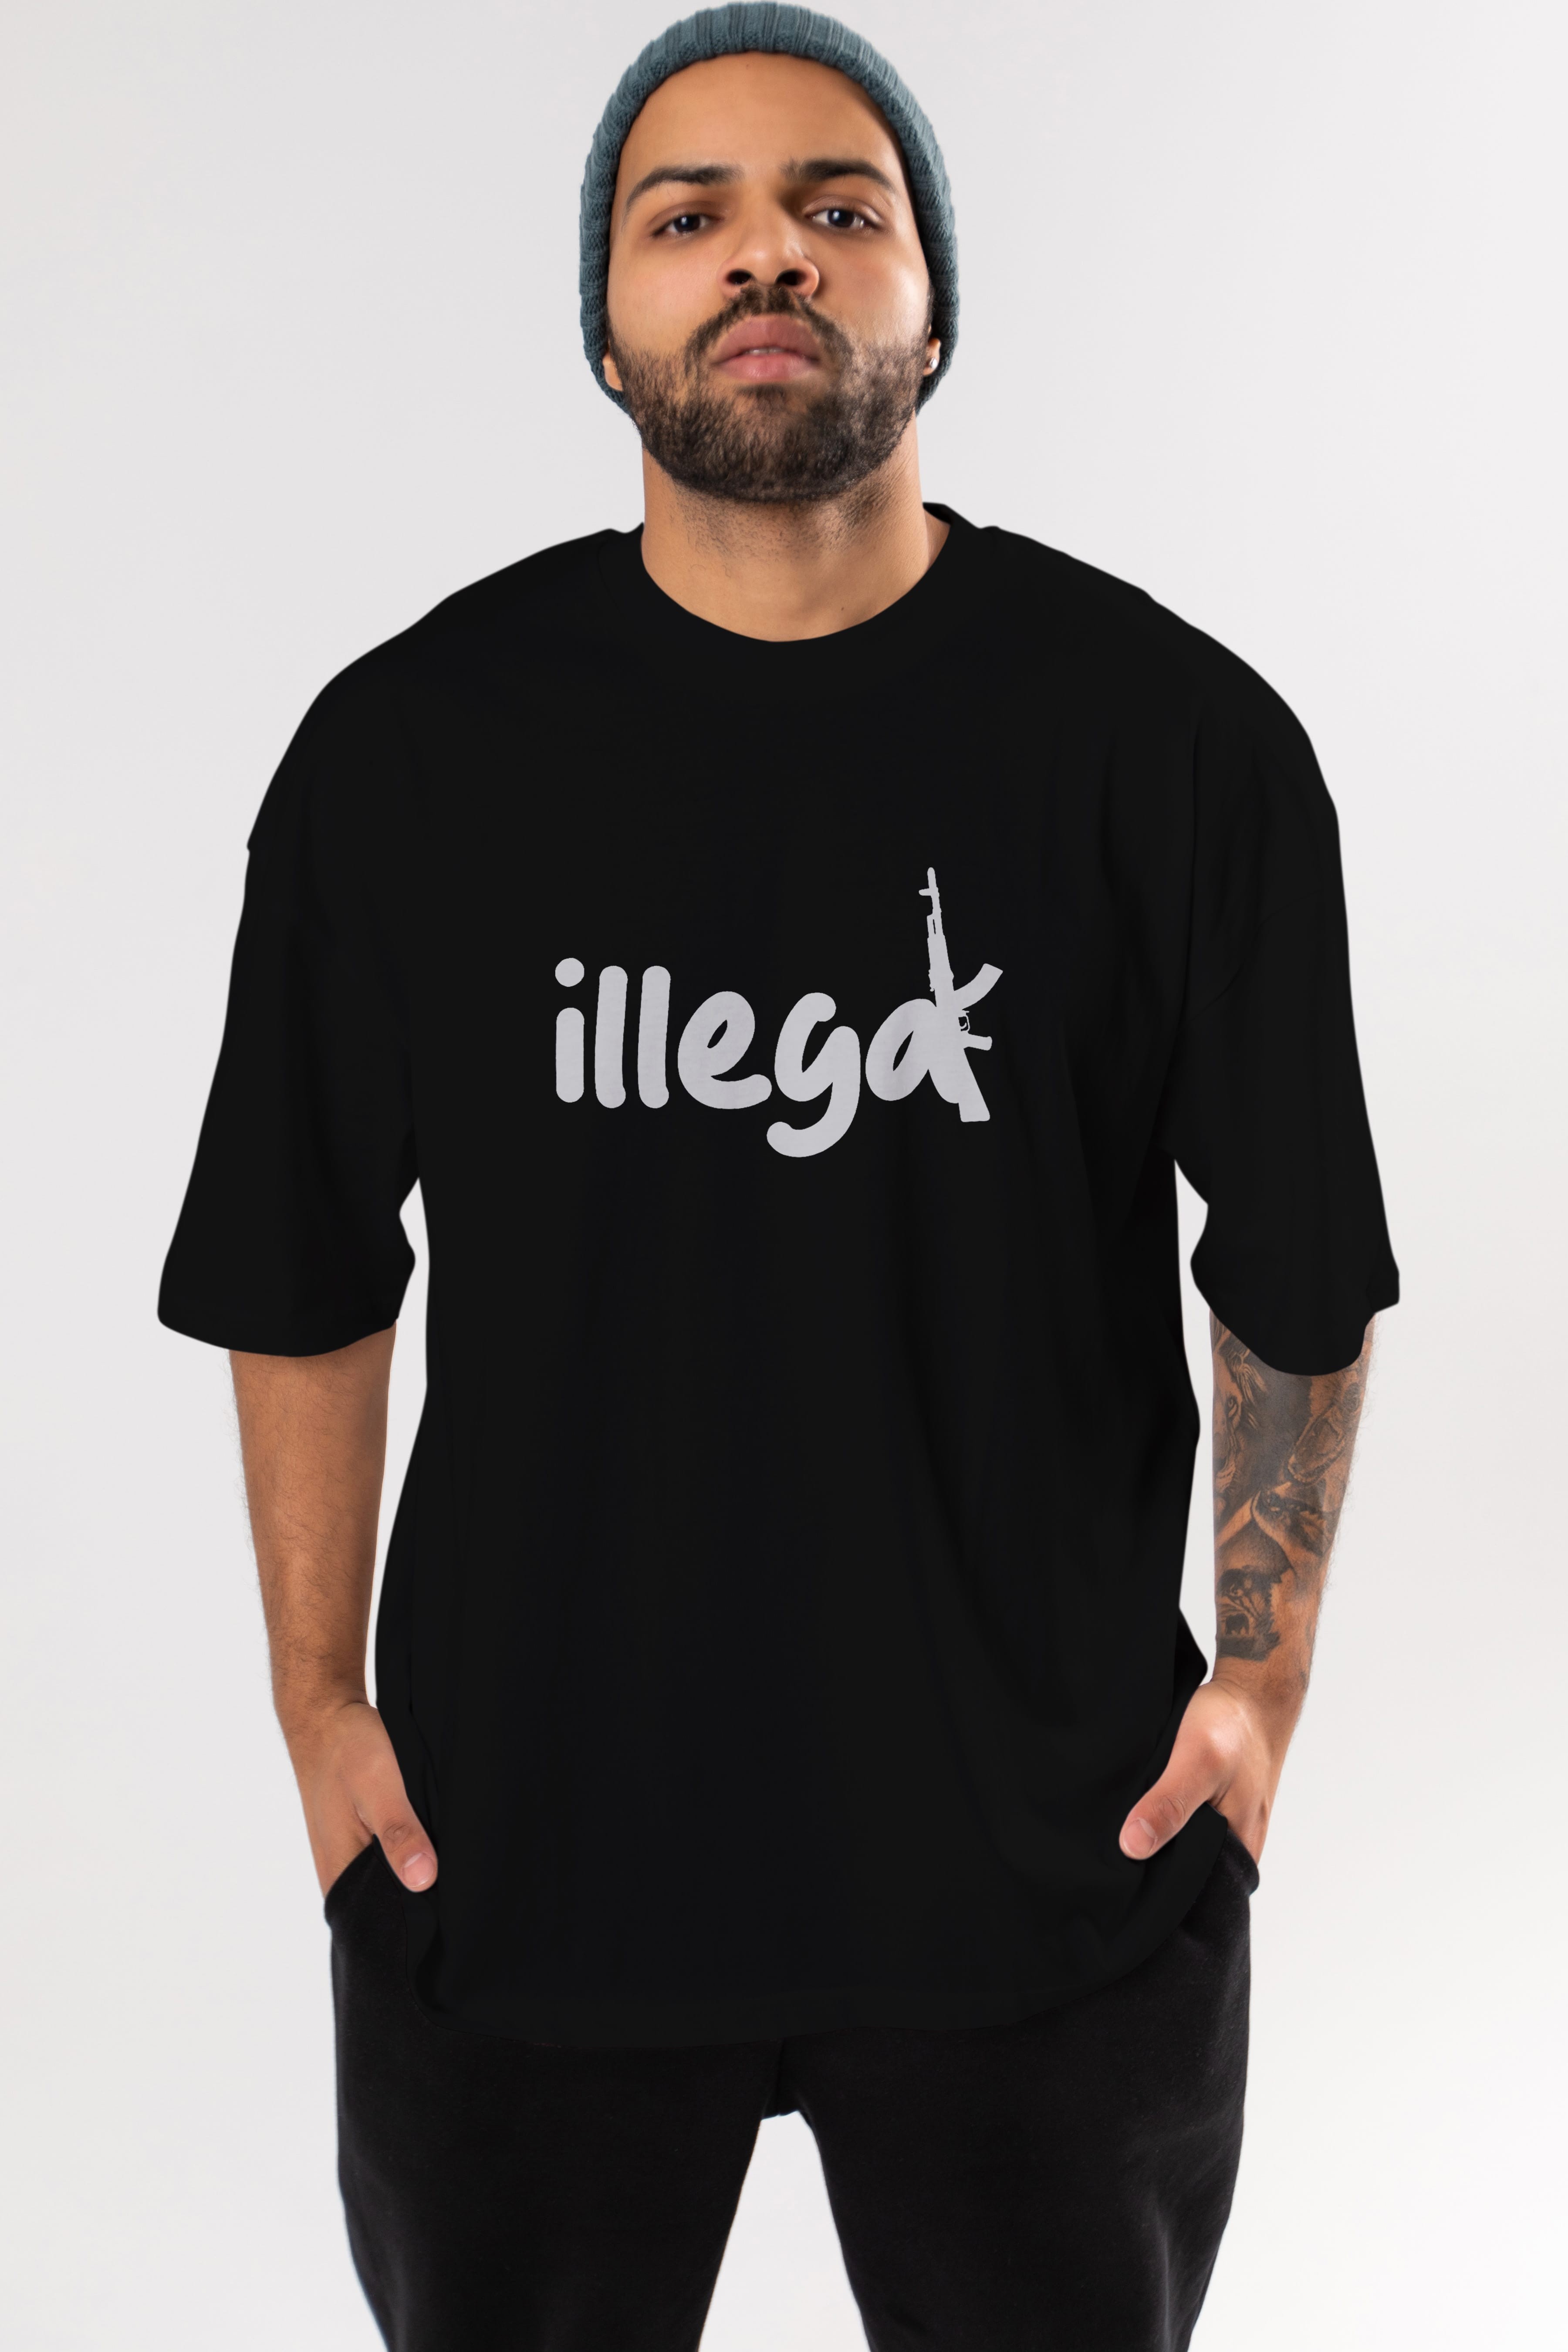 illegal Ön Baskılı Oversize t-shirt %100 pamuk Erkek Kadın Unisex